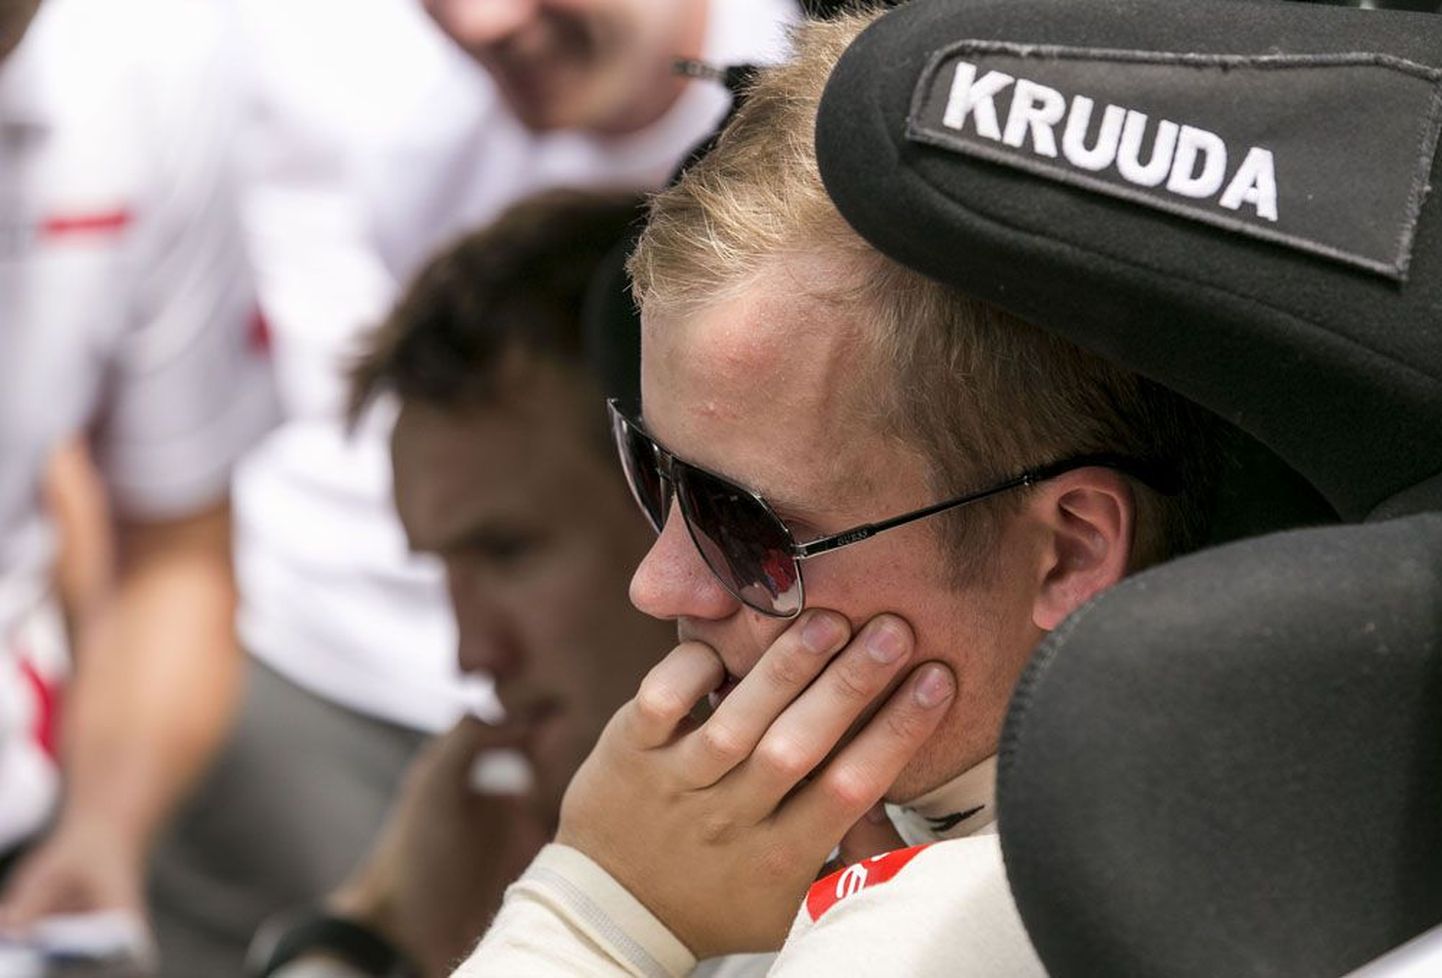 На чемпионате Финляндии по ралли эстонский гонщик Карл Крууда одержал победу в своем классе с минимальным преимуществом.